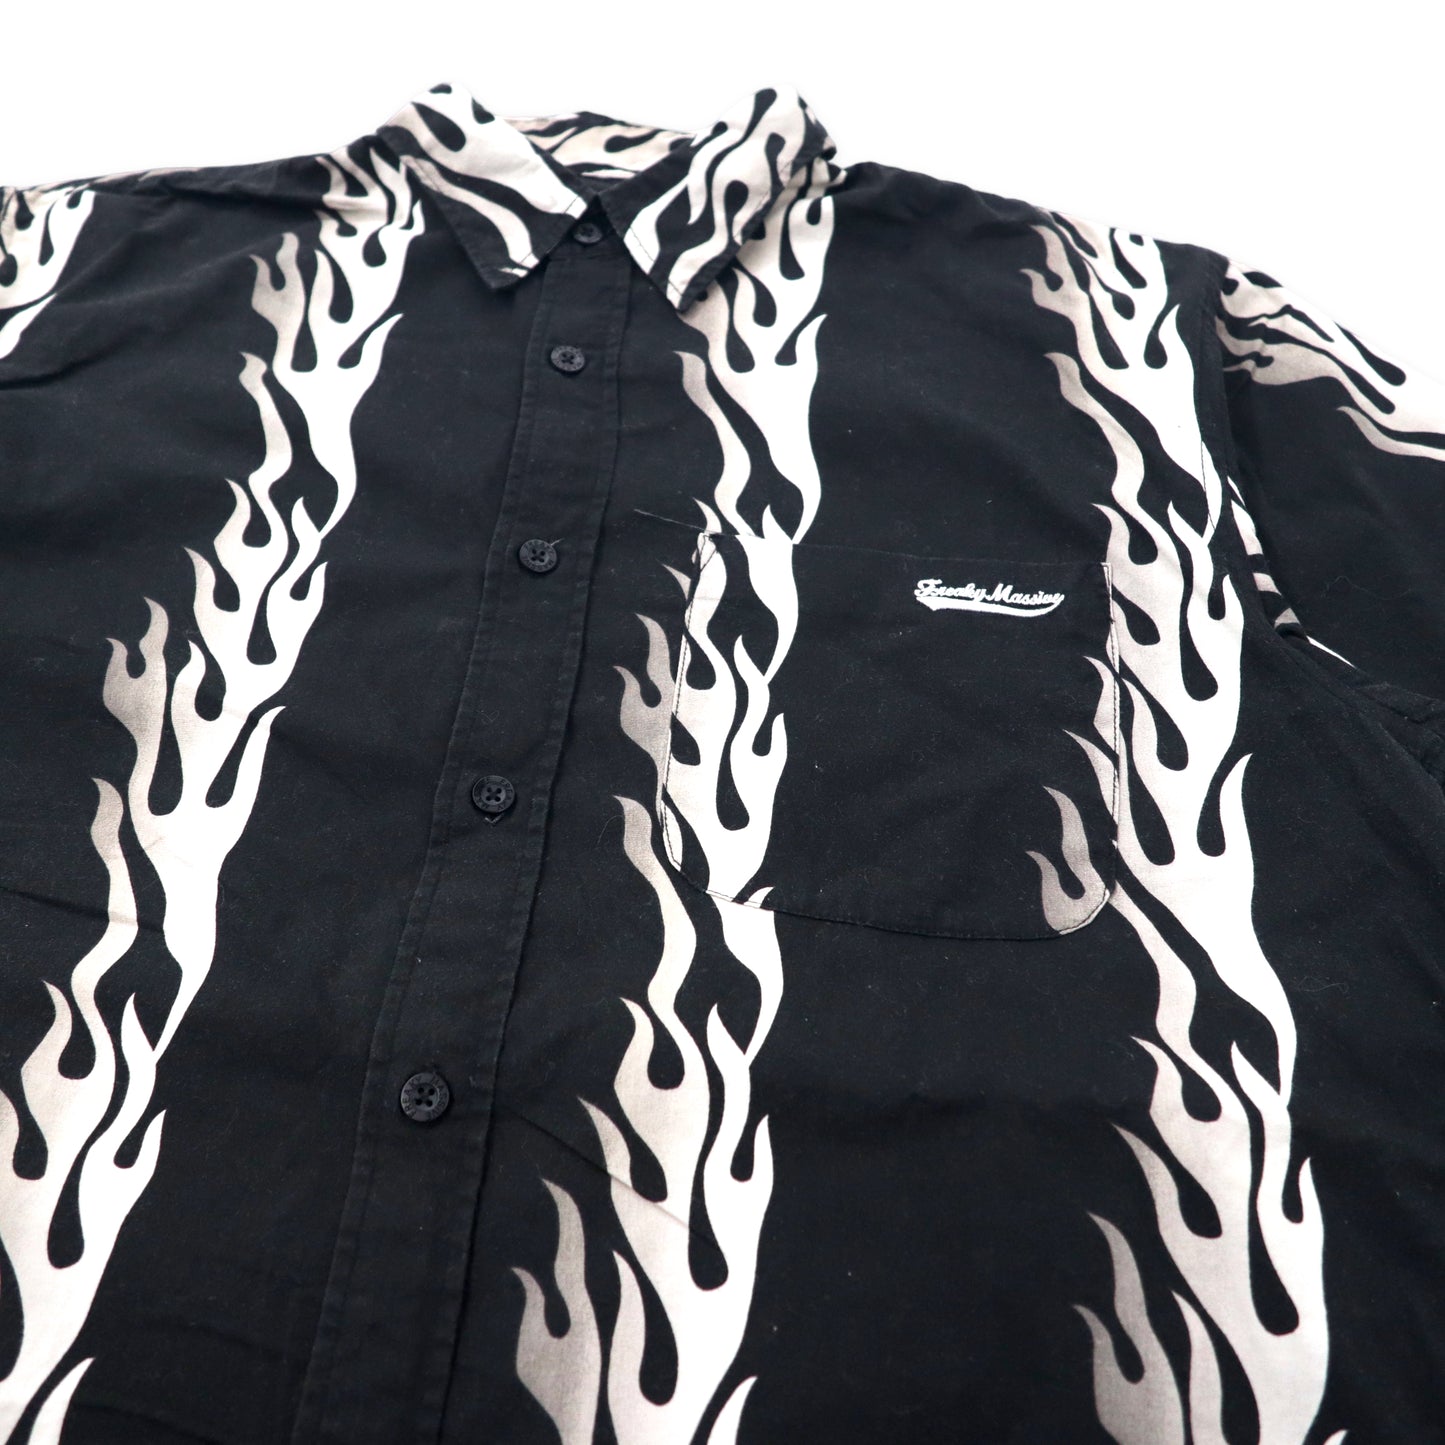 FREAKY 90年代 ファイヤーパターン 半袖シャツ アロハシャツ L ブラック コットン 総柄